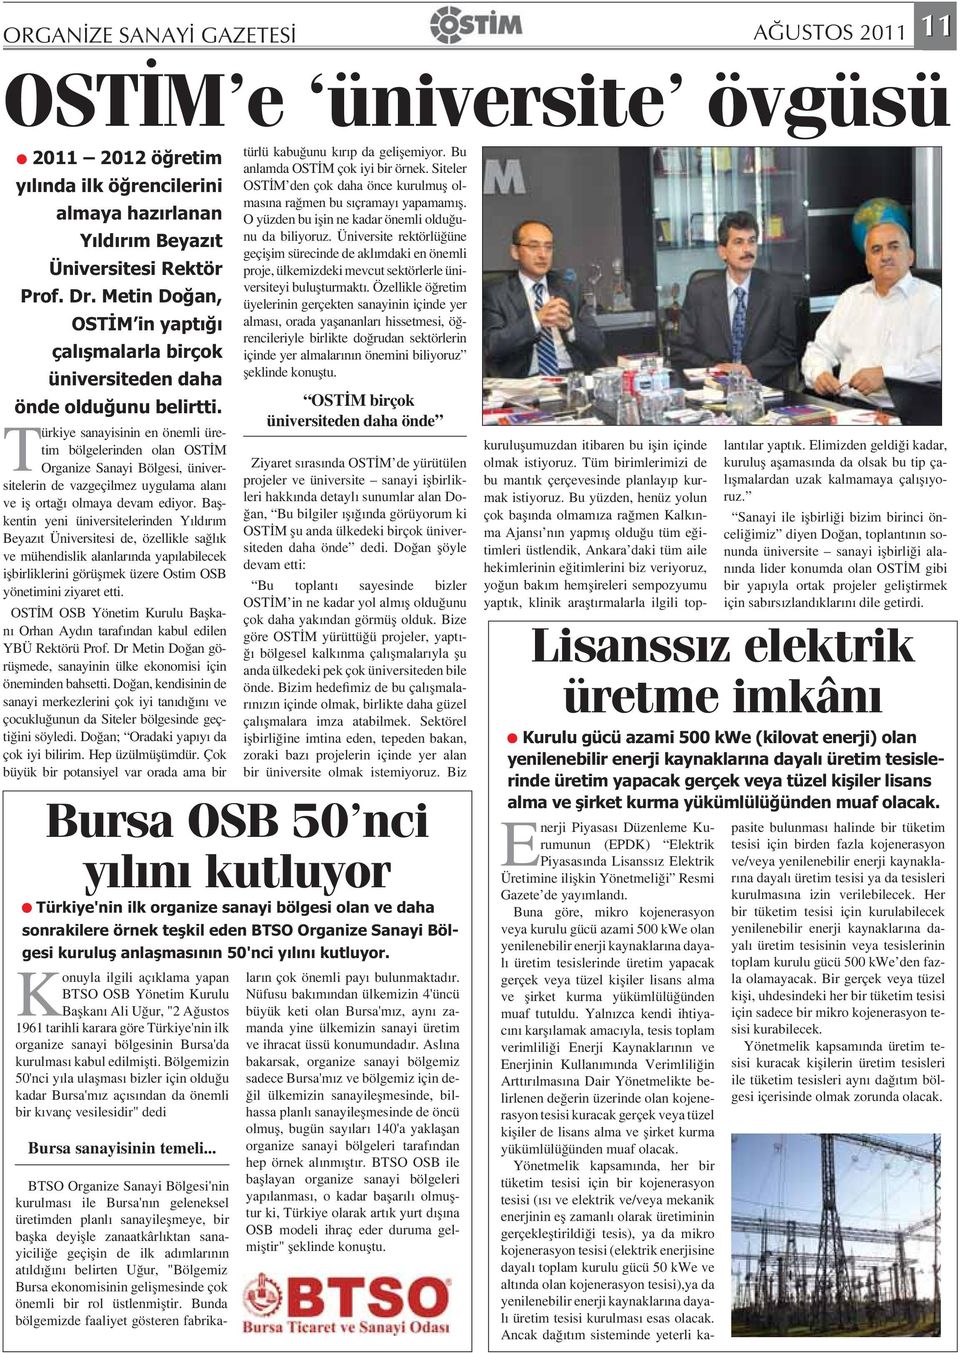 Türkiye sanayisinin en önemli üretim bölgelerinden olan OST M Organize Sanayi Bölgesi, üniversitelerin de vazgeçilmez uygulama alan ve i orta olmaya devam ediyor.